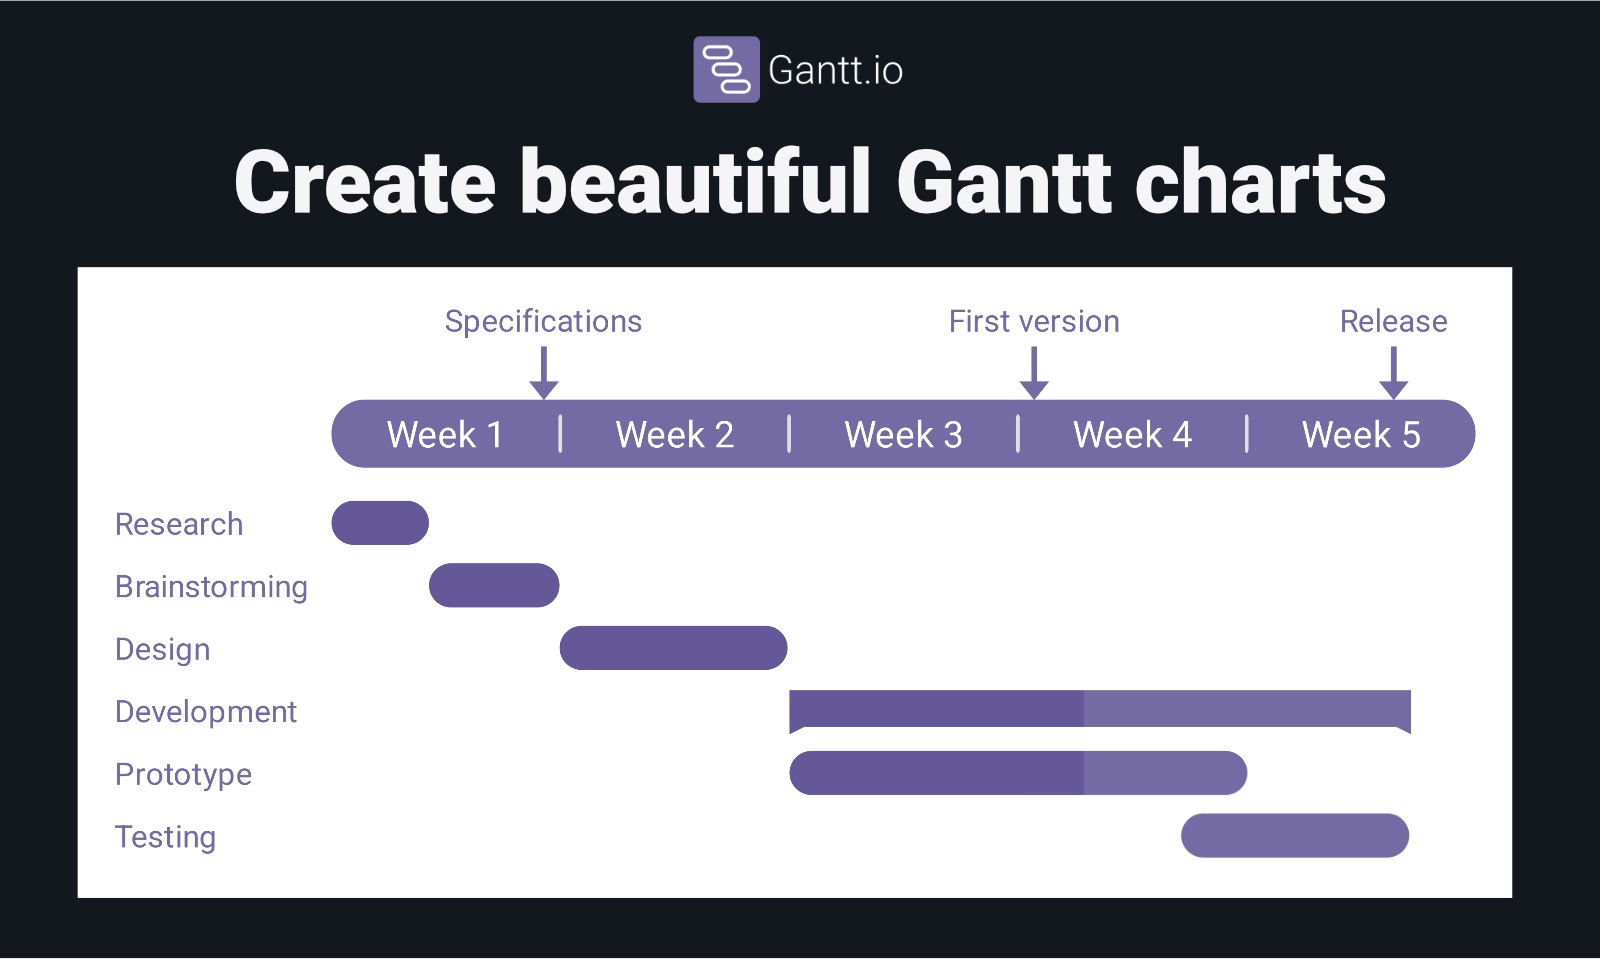 Find detailed information about Gantt.io